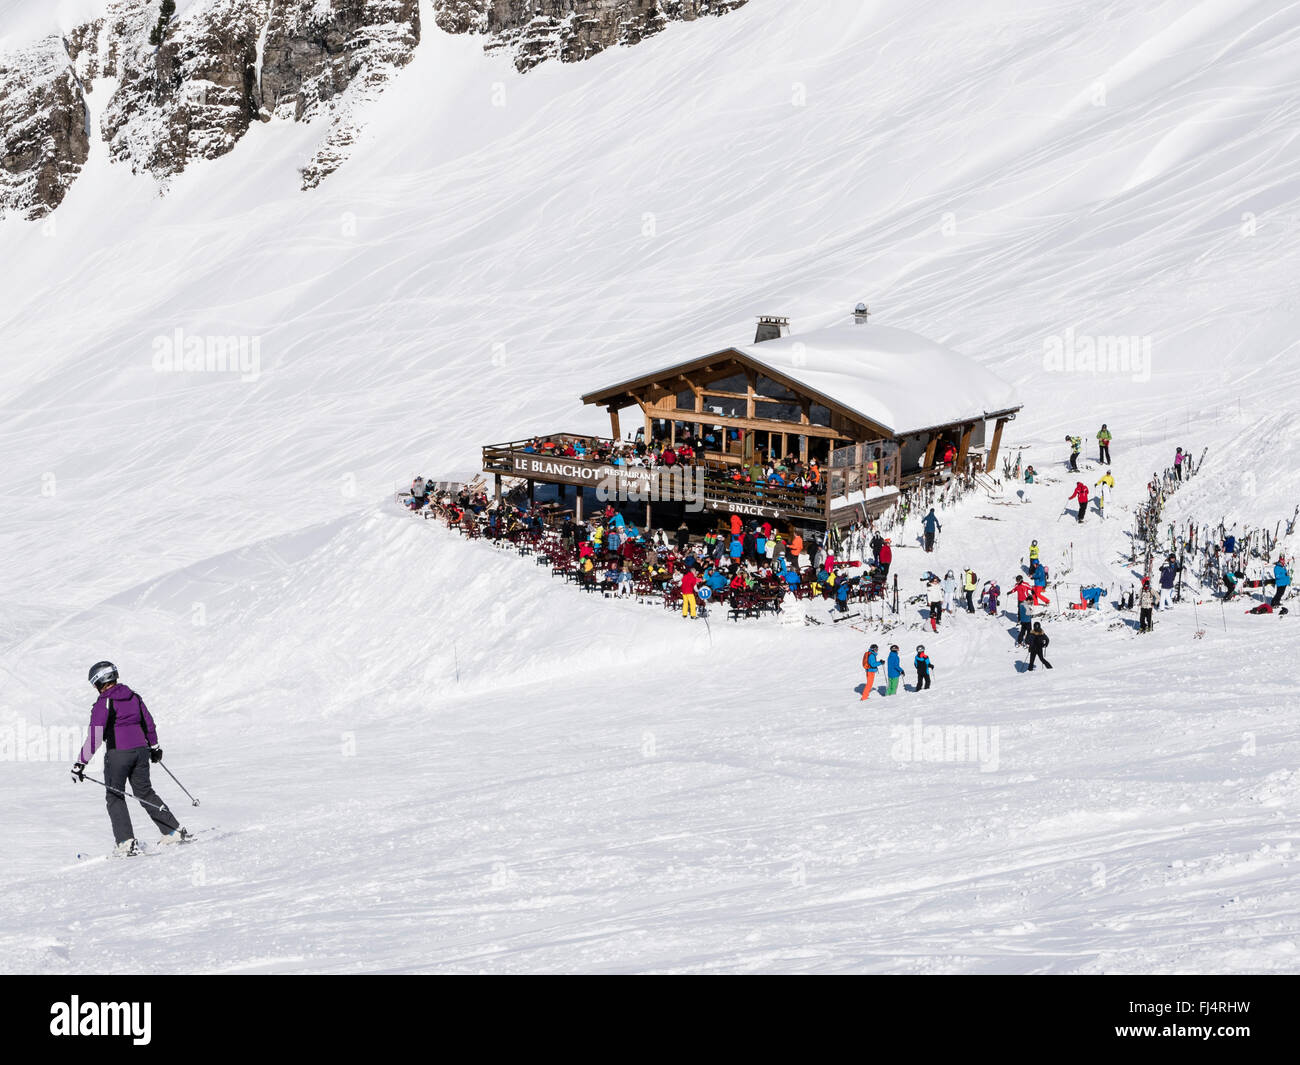 Le Blanchot restaurant ski alpin occupé avec les skieurs sur les pentes de neige dans le domaine skiable du Grand Massif des Alpes françaises. Flaine, France Banque D'Images